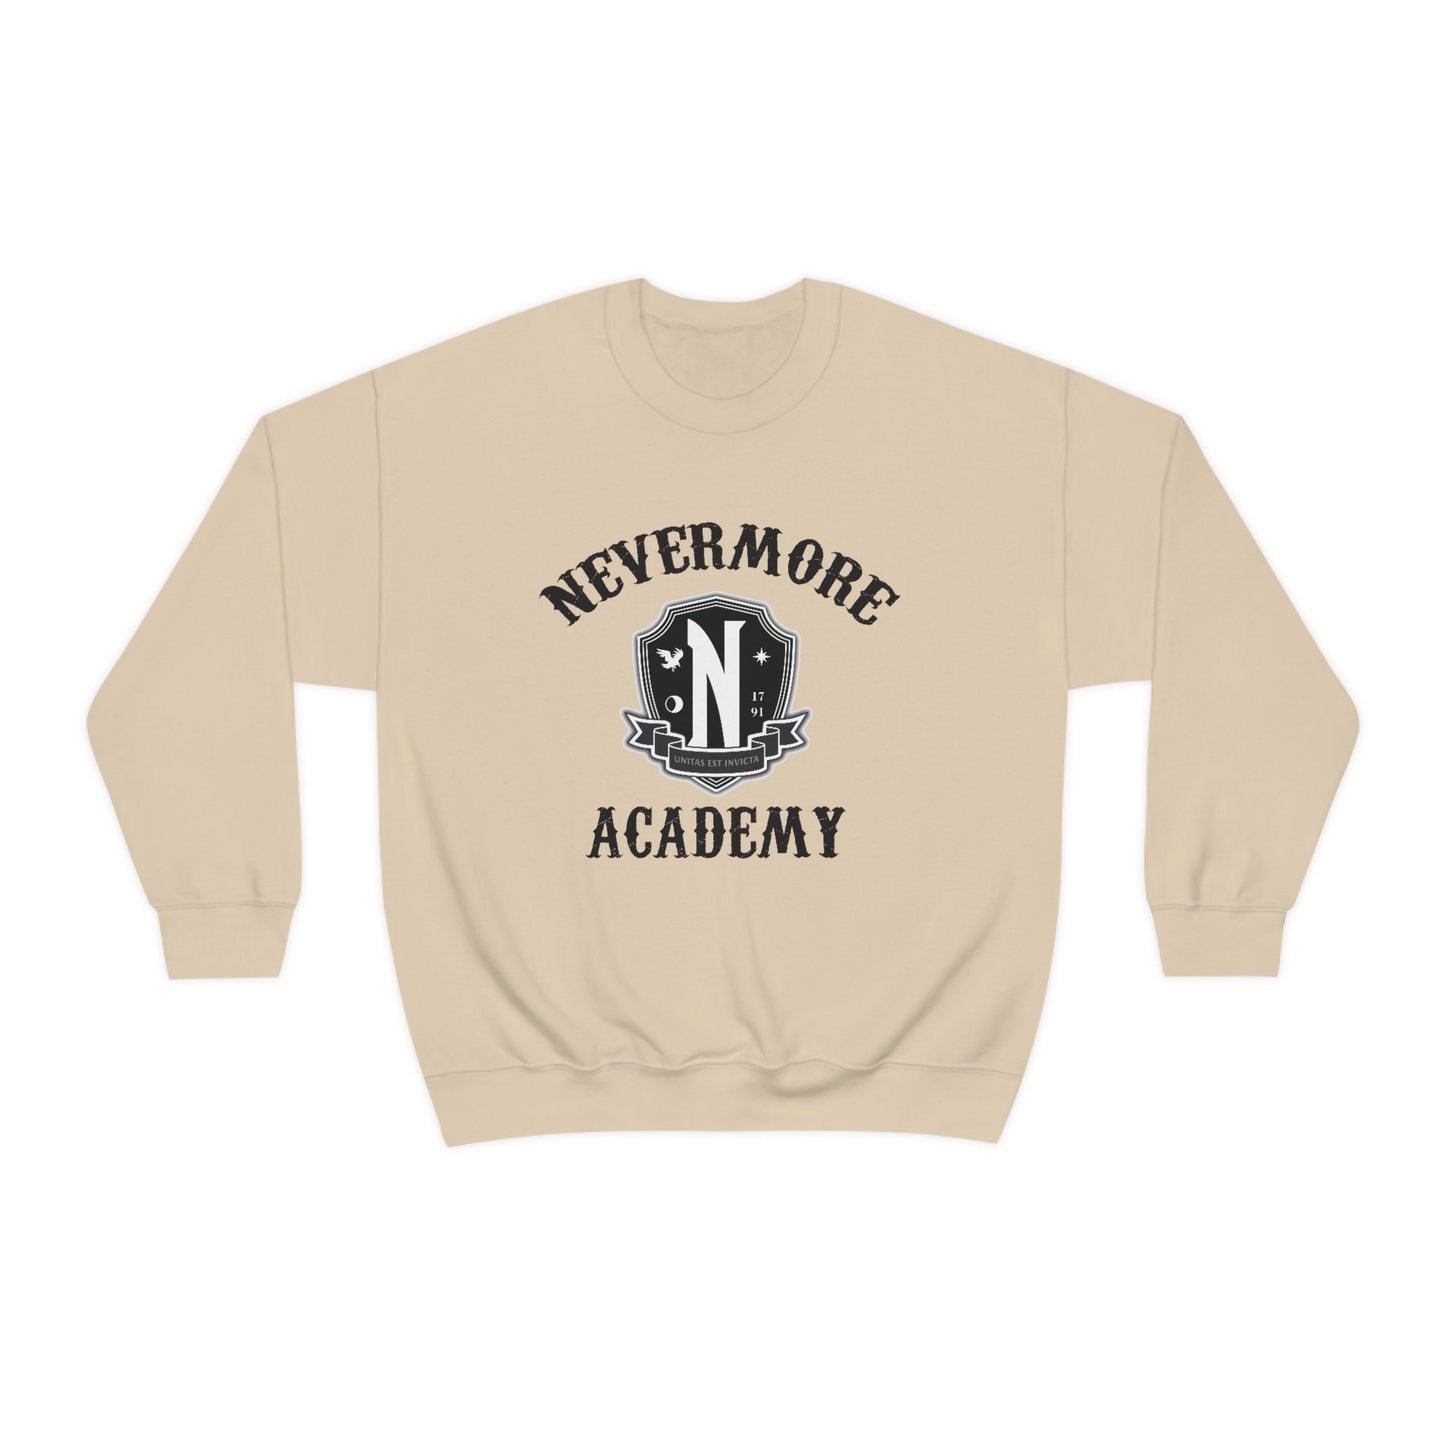 Wednesday Addams Sweatshirt, Nevermore Academy, Trendy Wednesday Addams Sweatshirt, Addams Family